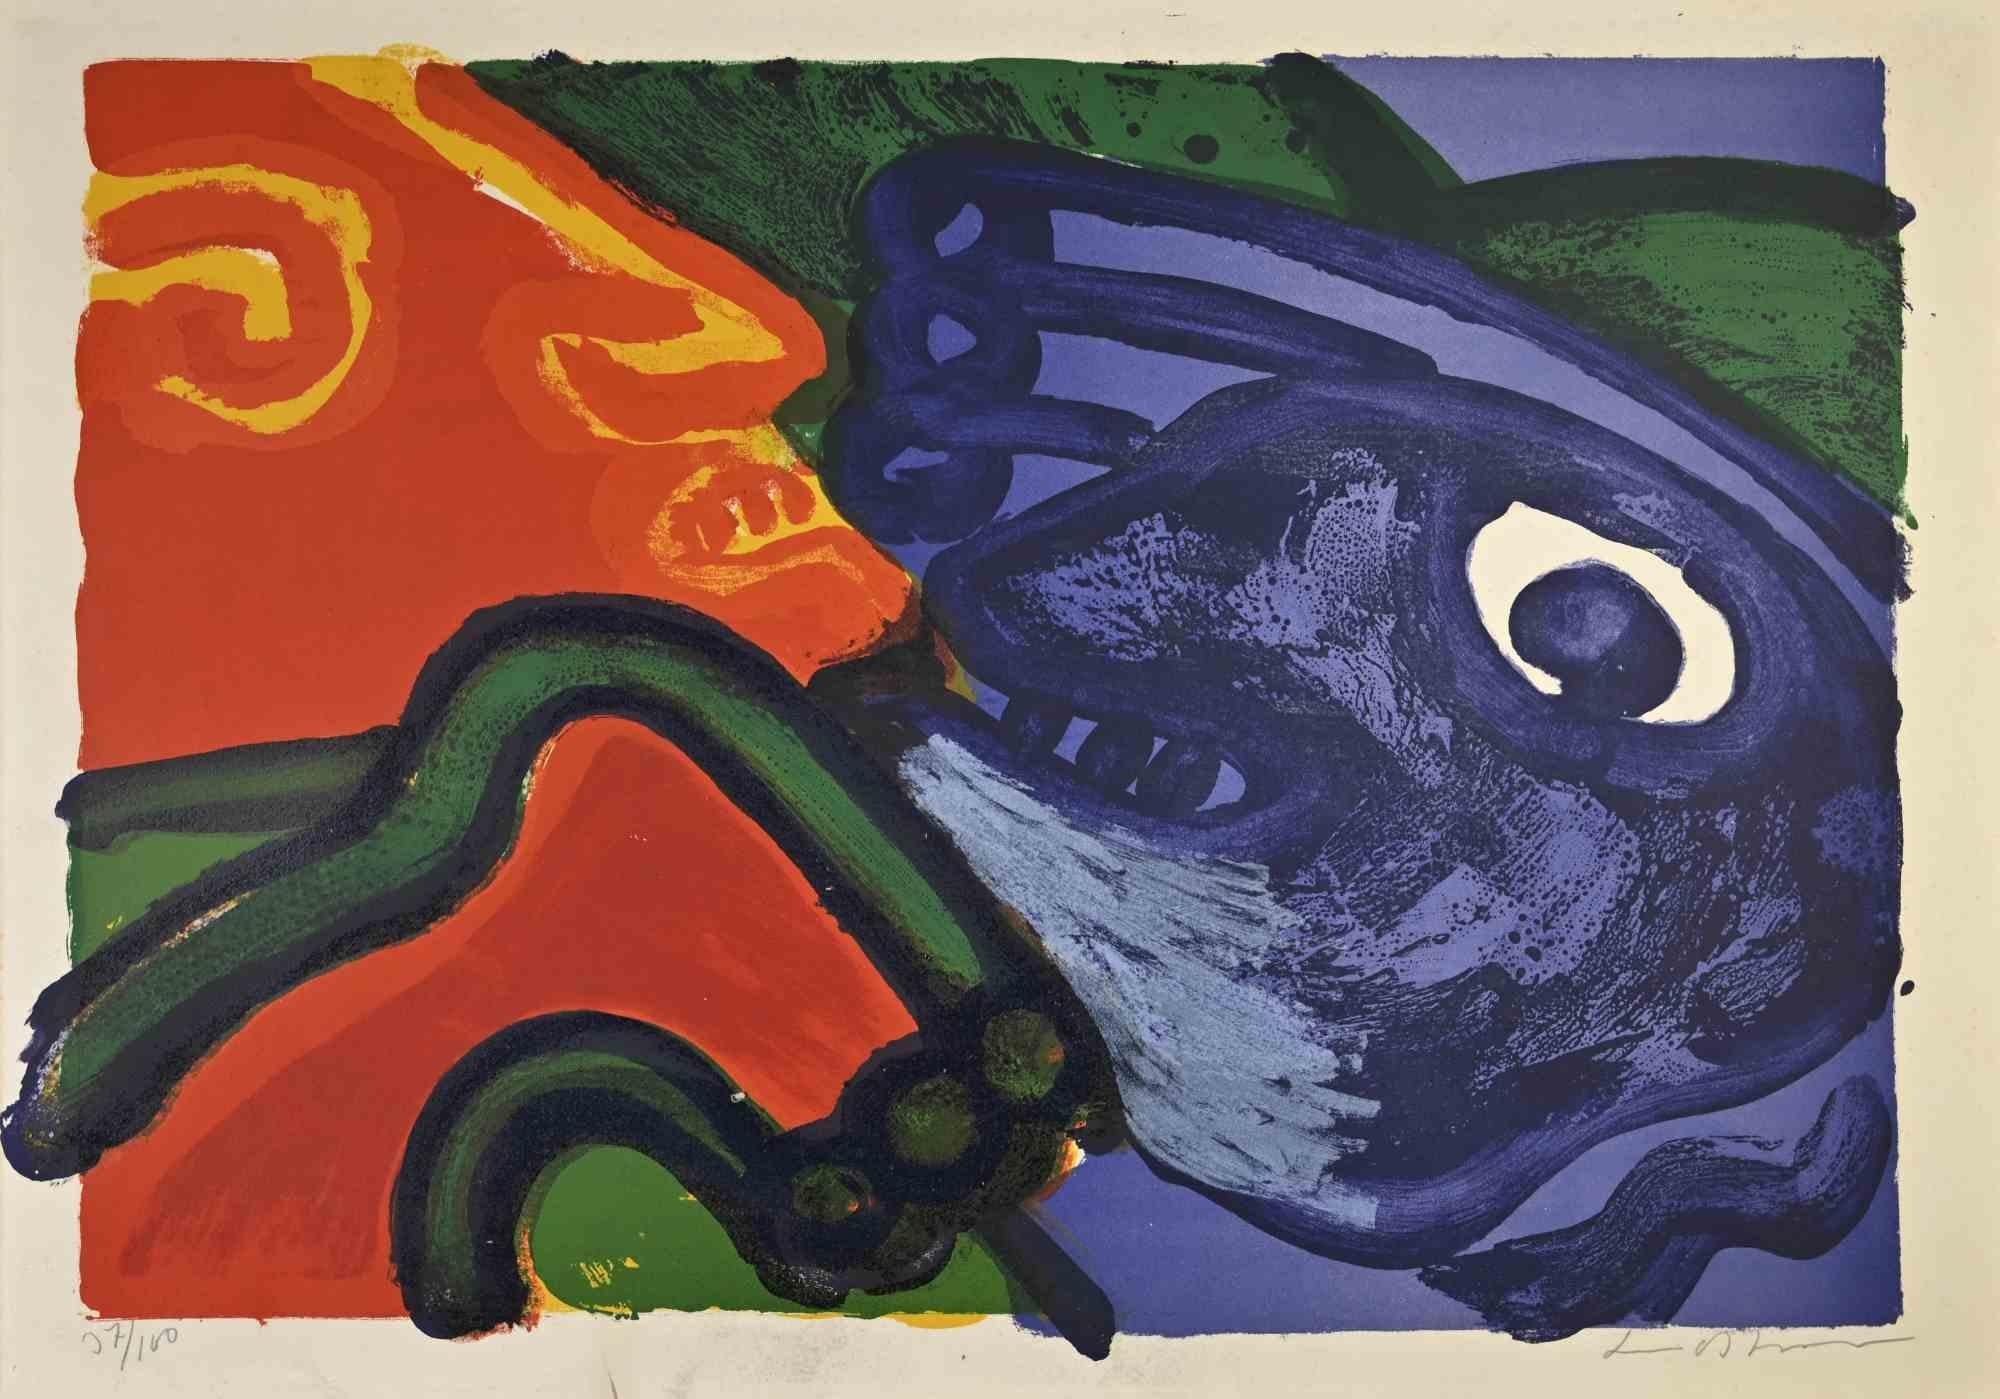 Untitled est une œuvre d'art réalisée par Bengt Lindstrom (1925 - 2008).

Sérigraphie. Cm 78,00 x 57,00. 7/100.

Signé et numéroté à la main.

Bonnes conditions



Bengt Lindström est né le 3 septembre 1925 à Storsjökappel, un petit village du